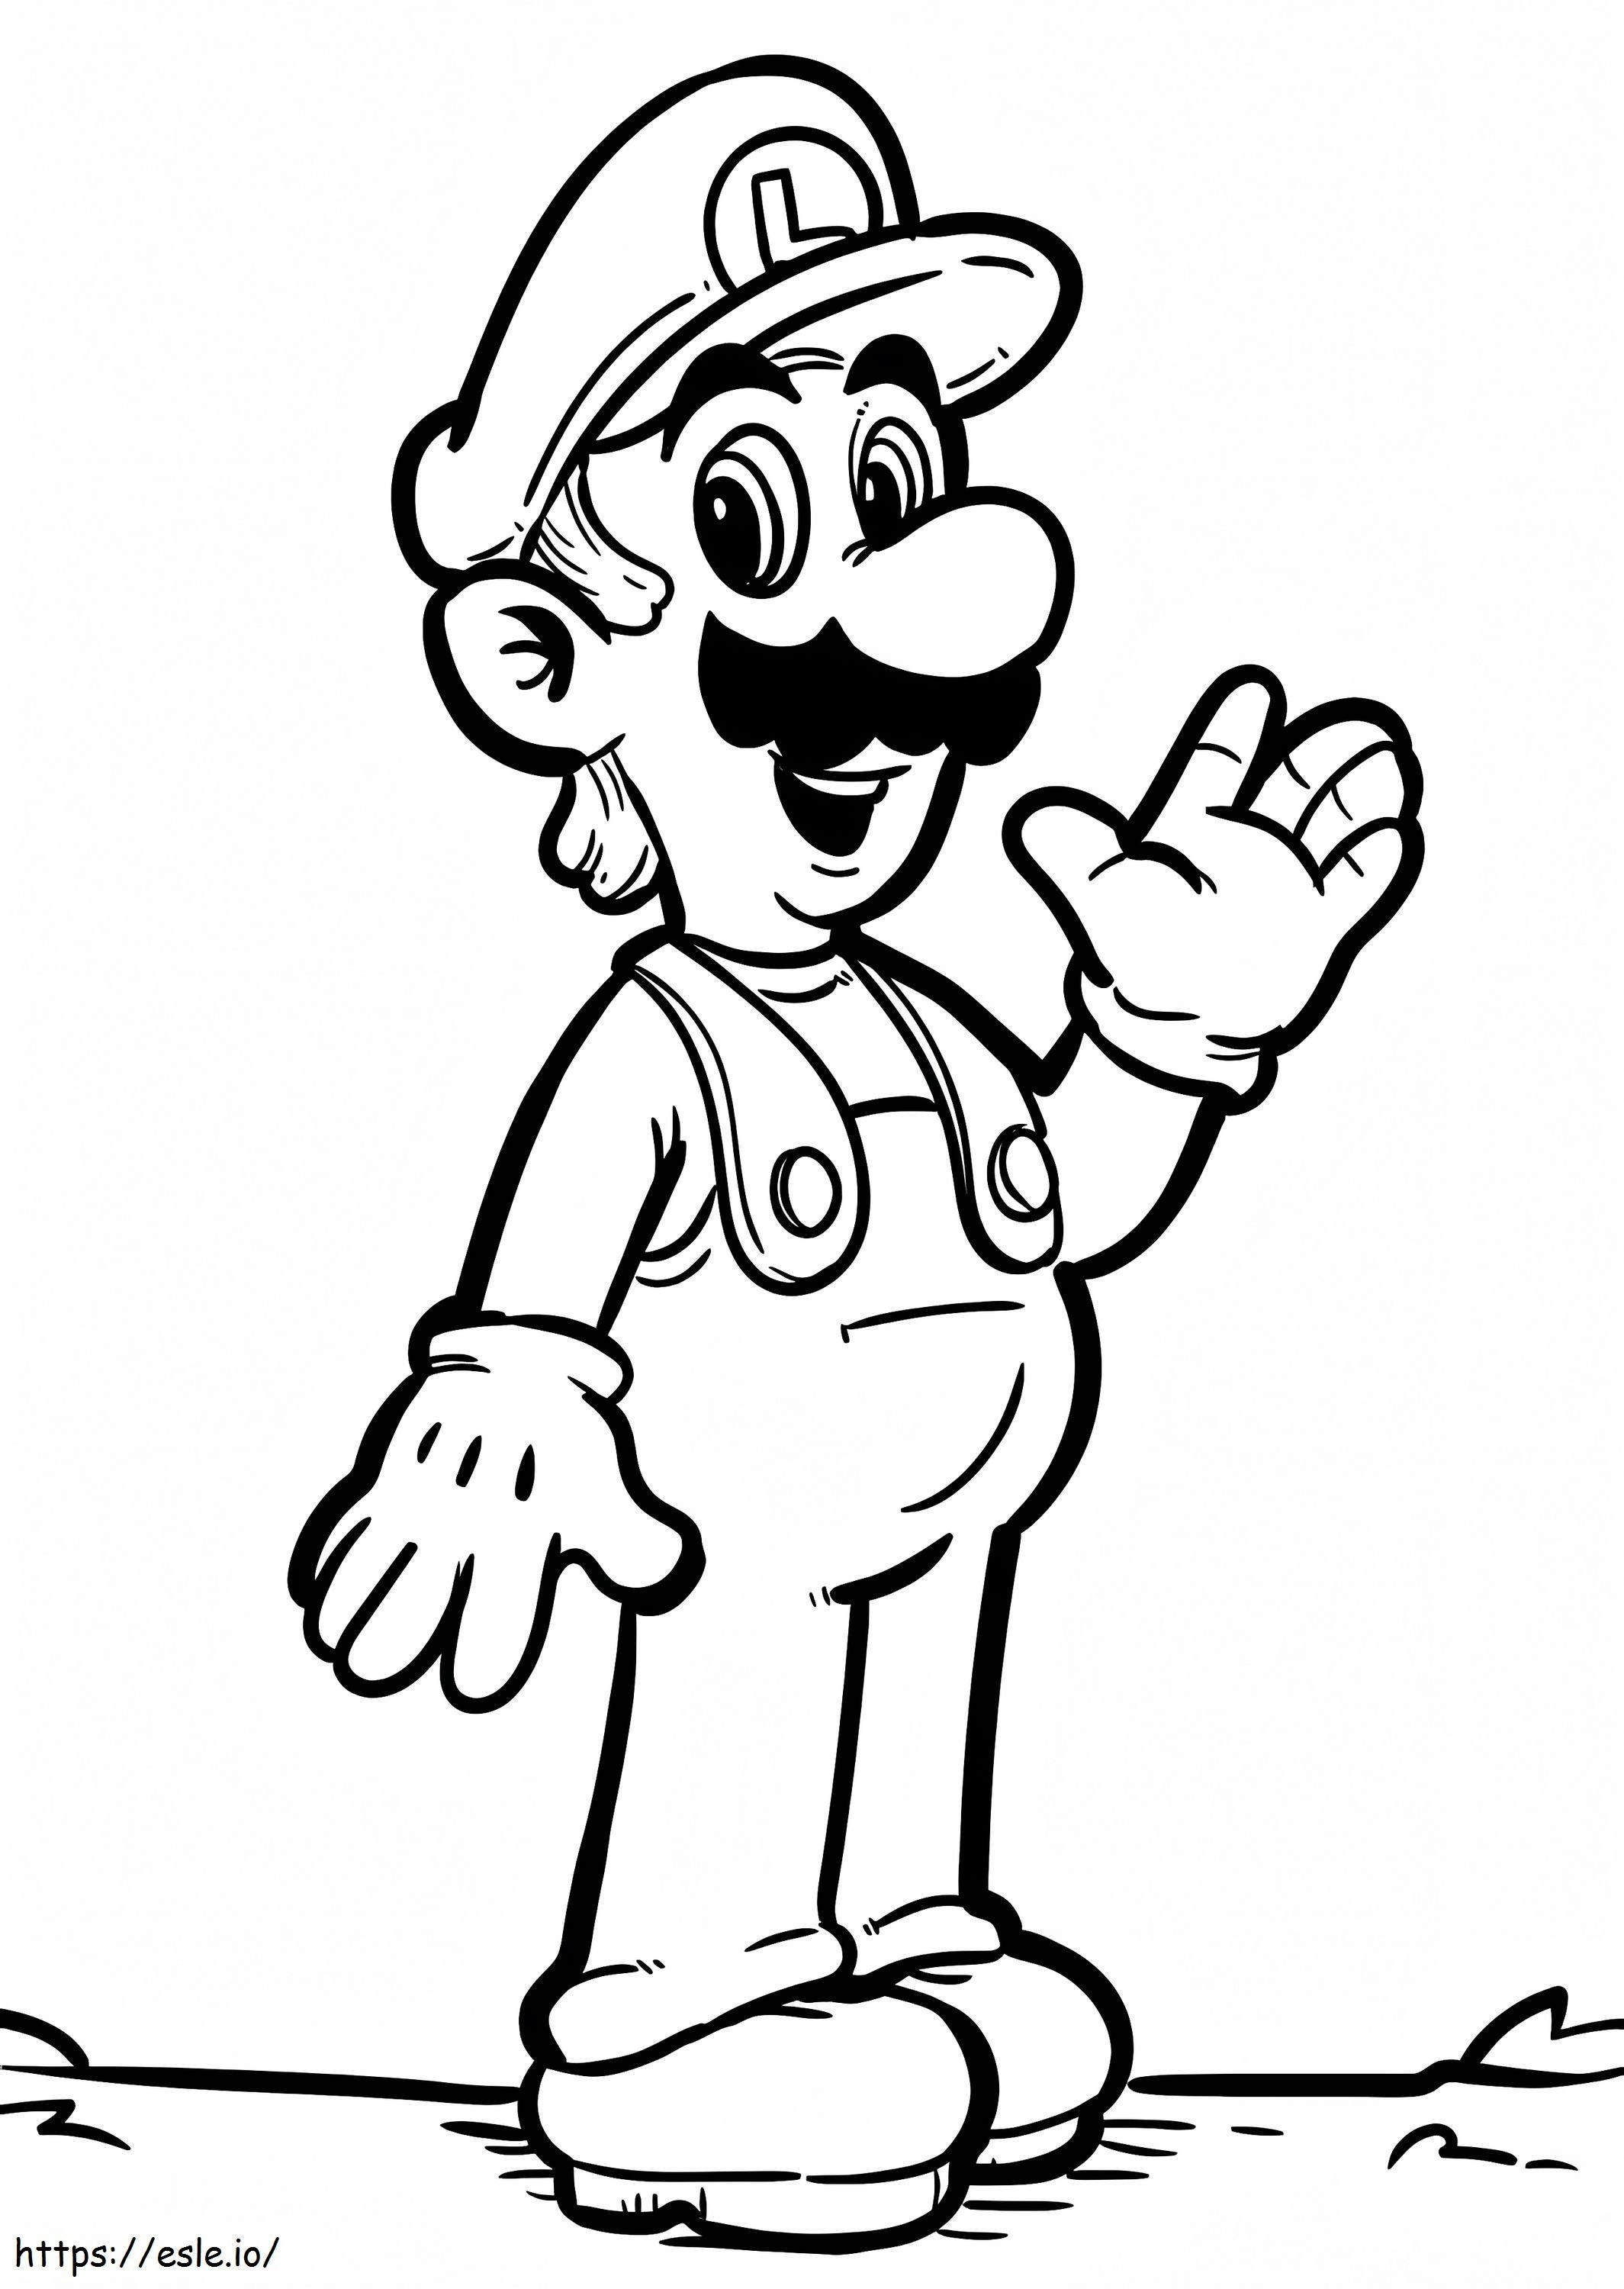 Luigi De Super Mario 2 para colorear